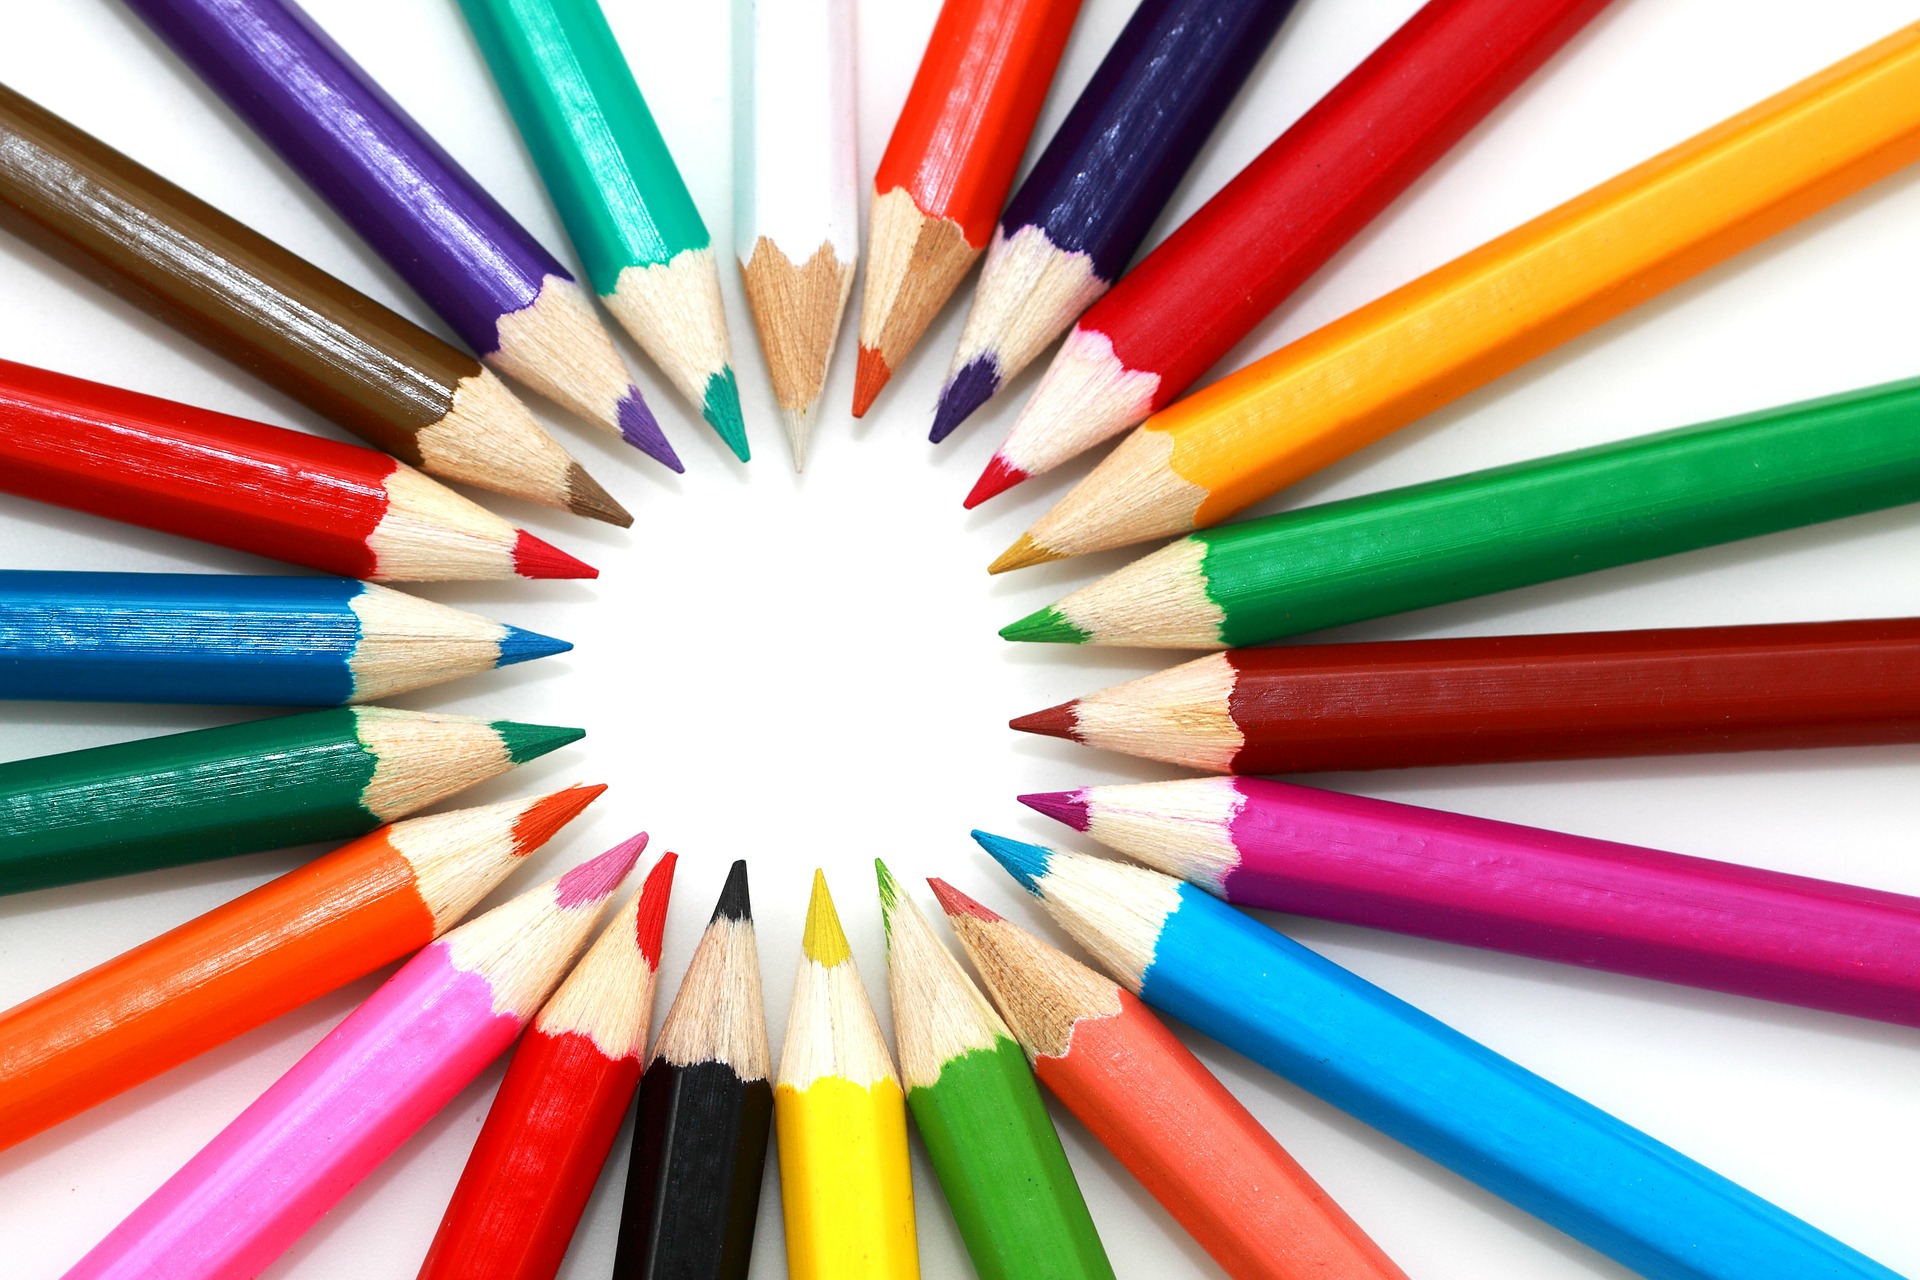 Robert Ulysses Colour Pencils